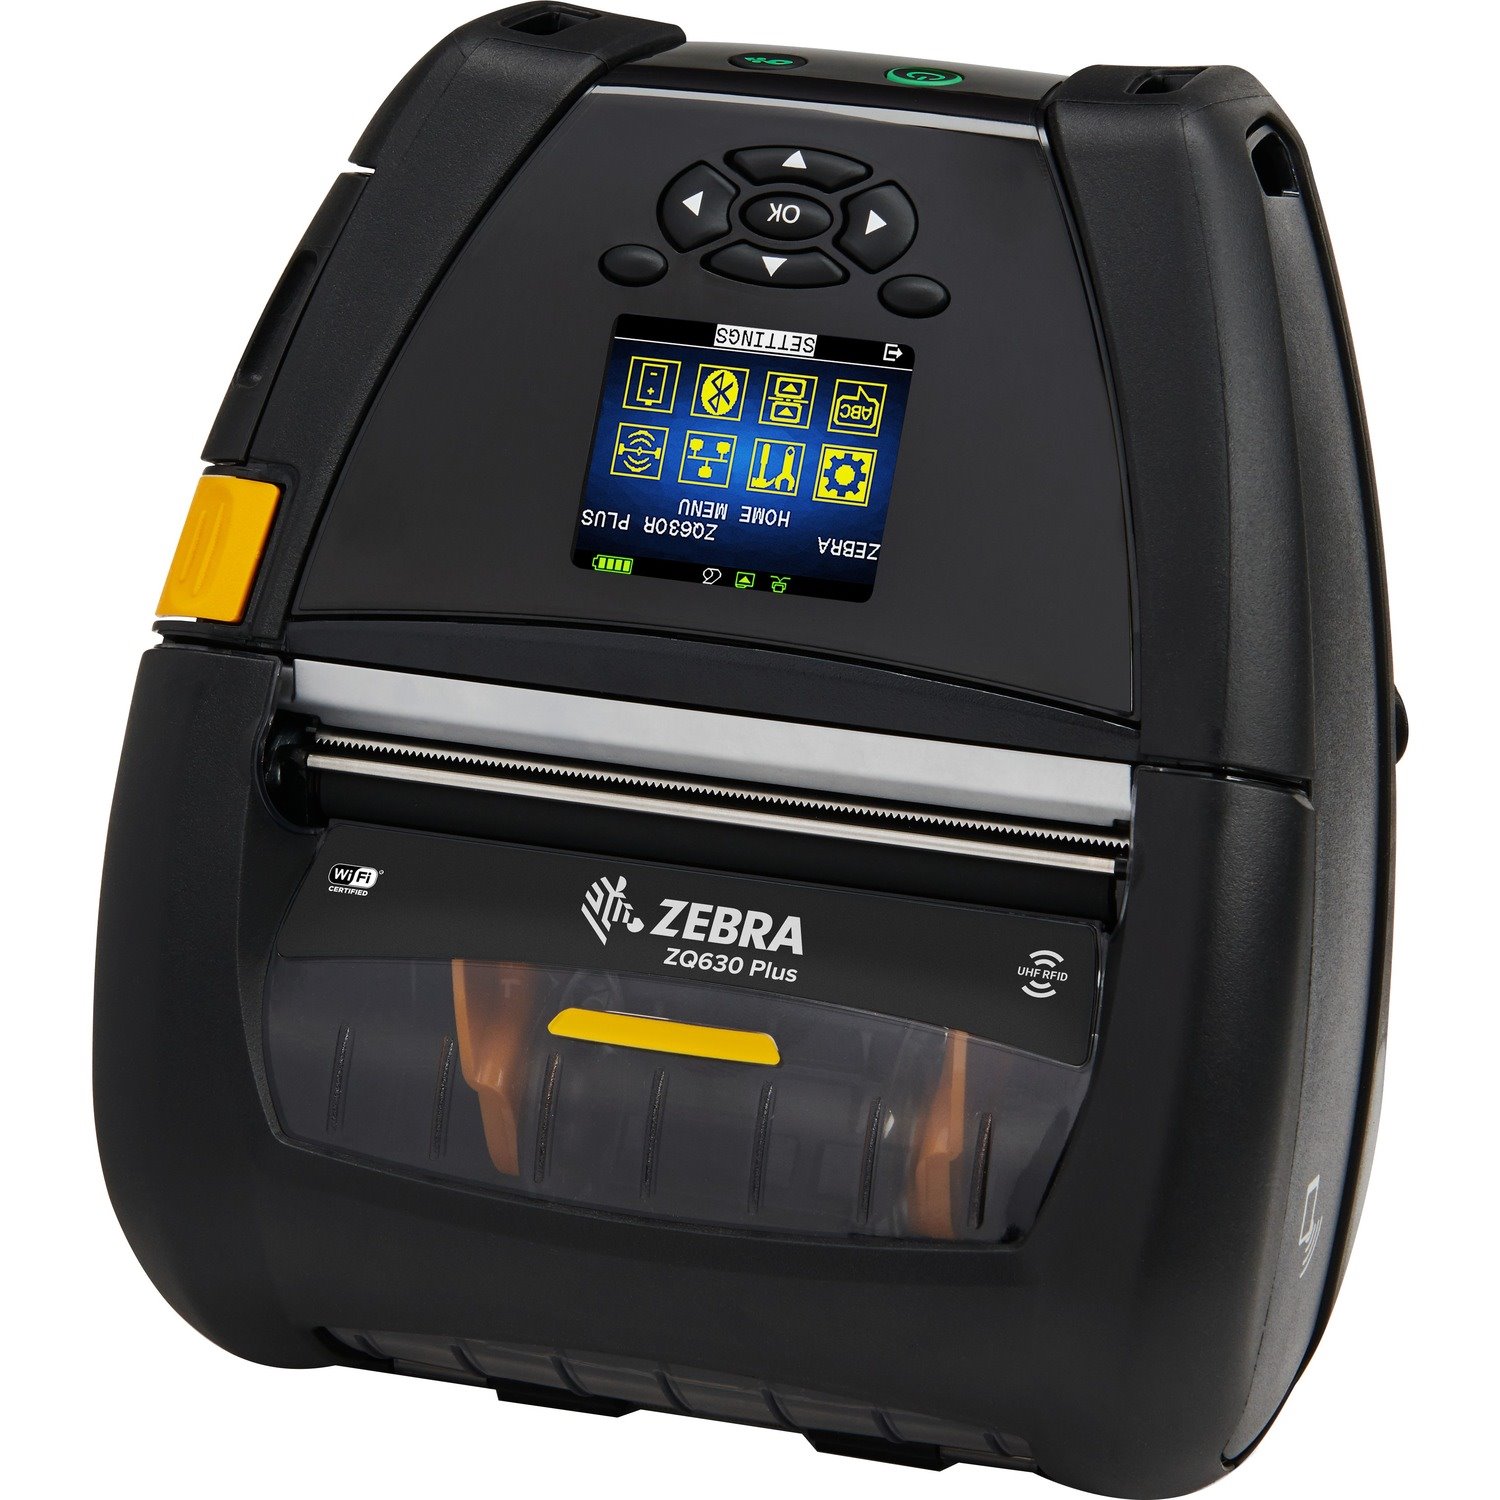 Buy Zebra Zq630 Plus Desktop Industrial Mobile Direct Thermal Printer Monochrome Label 2595